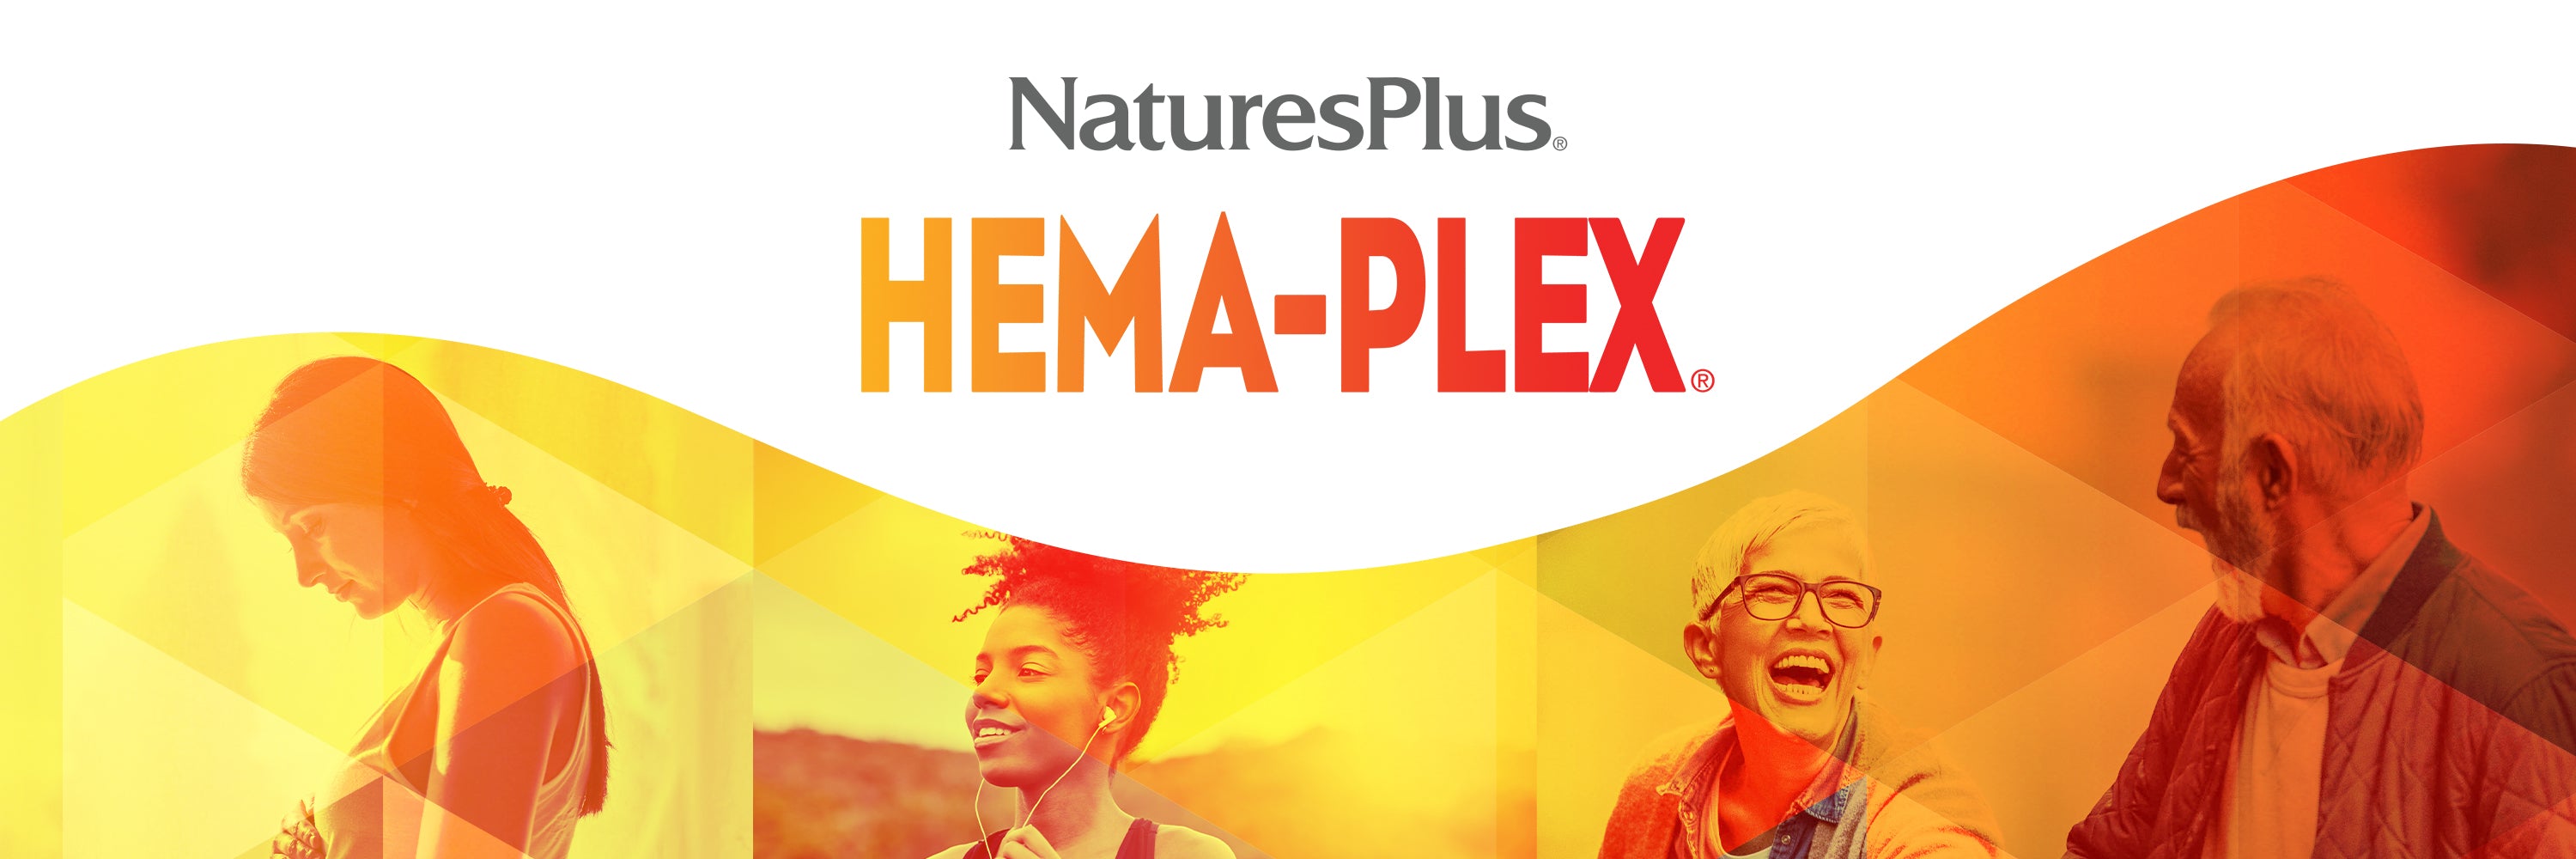 HemaPlex collection image banner